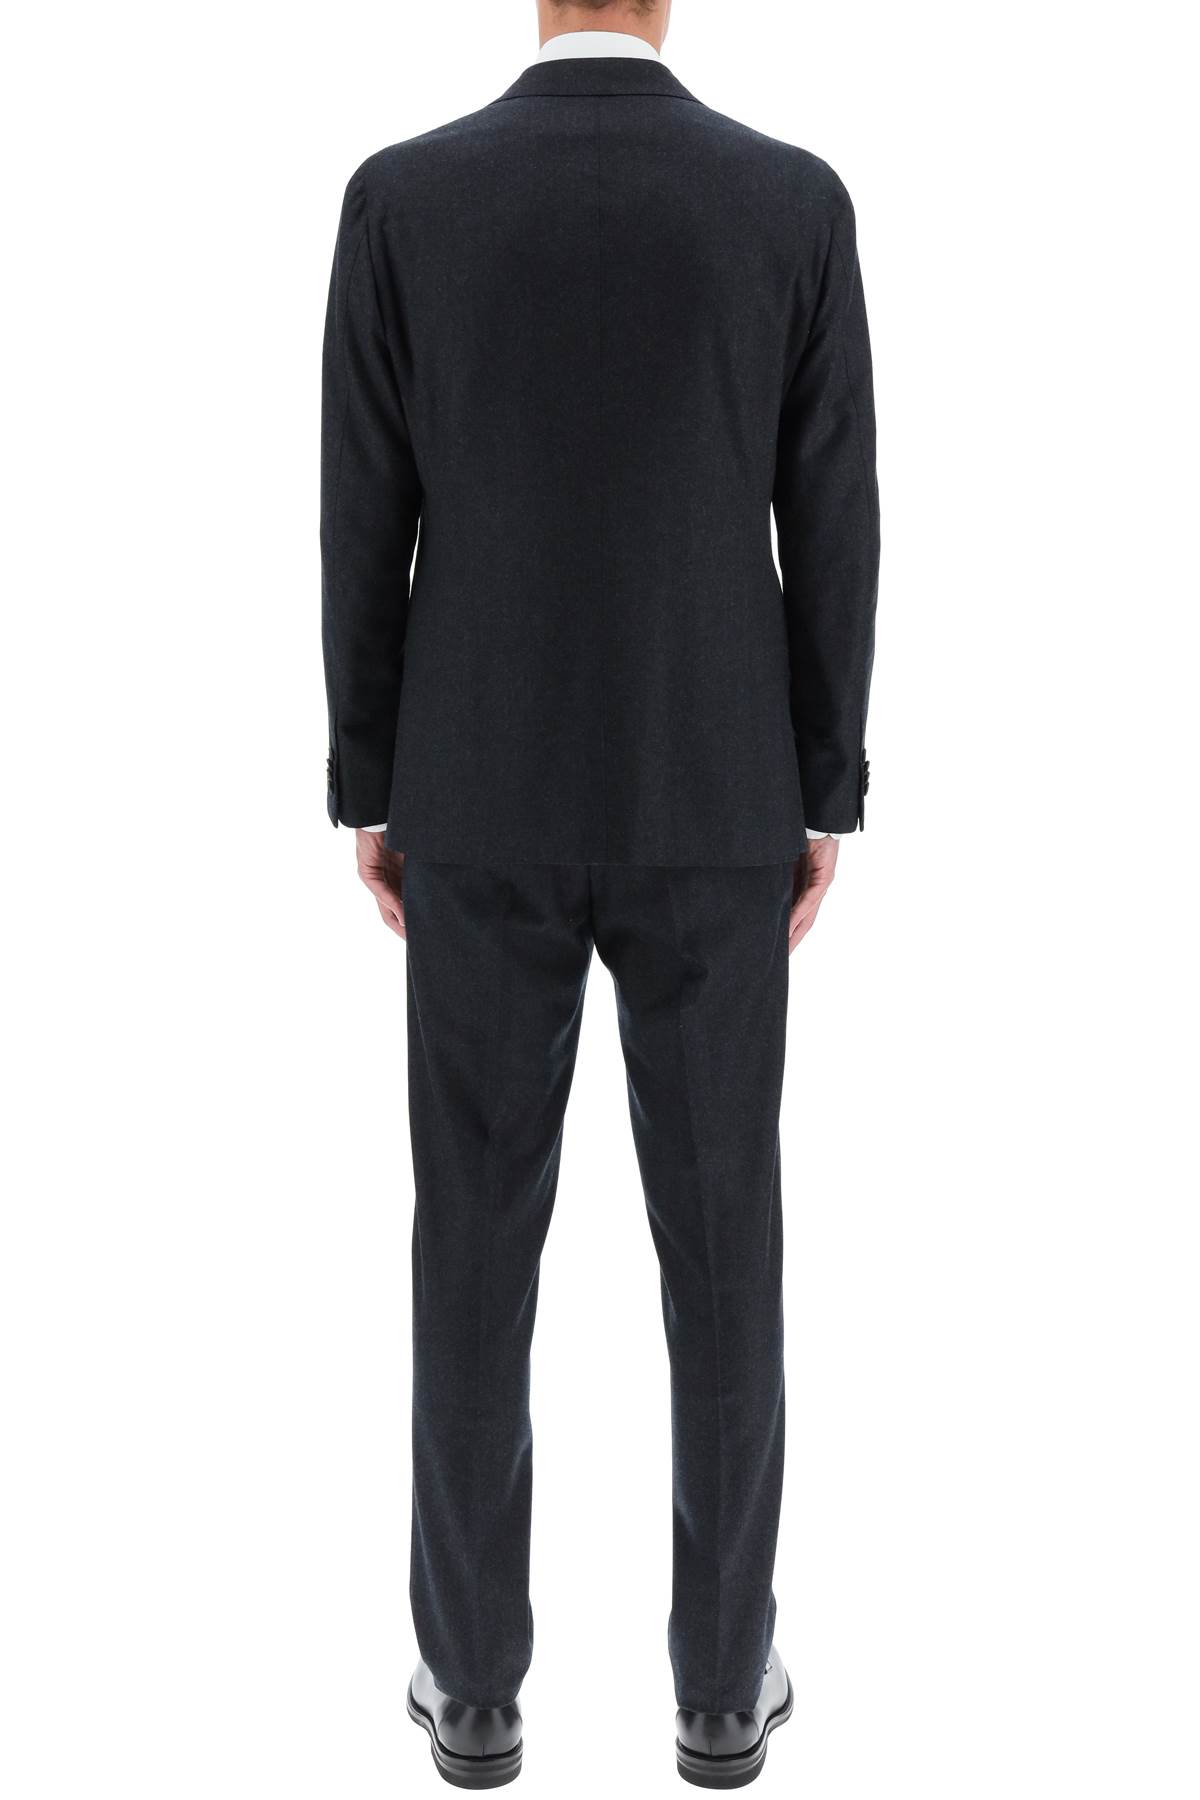 Shop Caruso Aida Wool Suit In Dark Grey (grey)